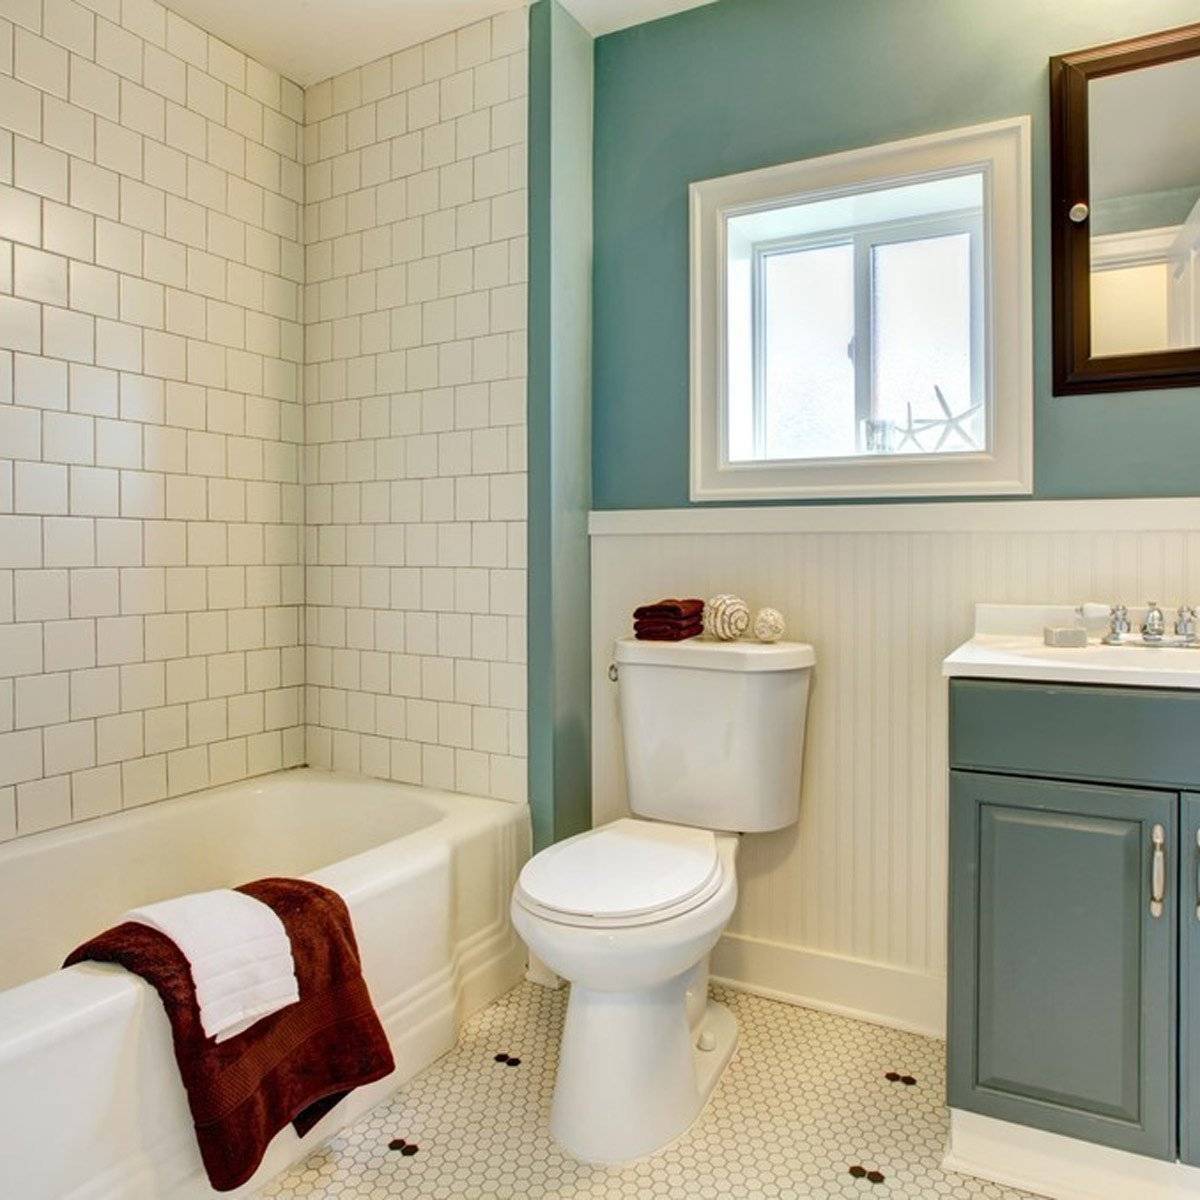 5 бюджетных вариантов отделки стен в ванной комнате: новости, дизайн, интерьер, советы, дизайн и интерьер